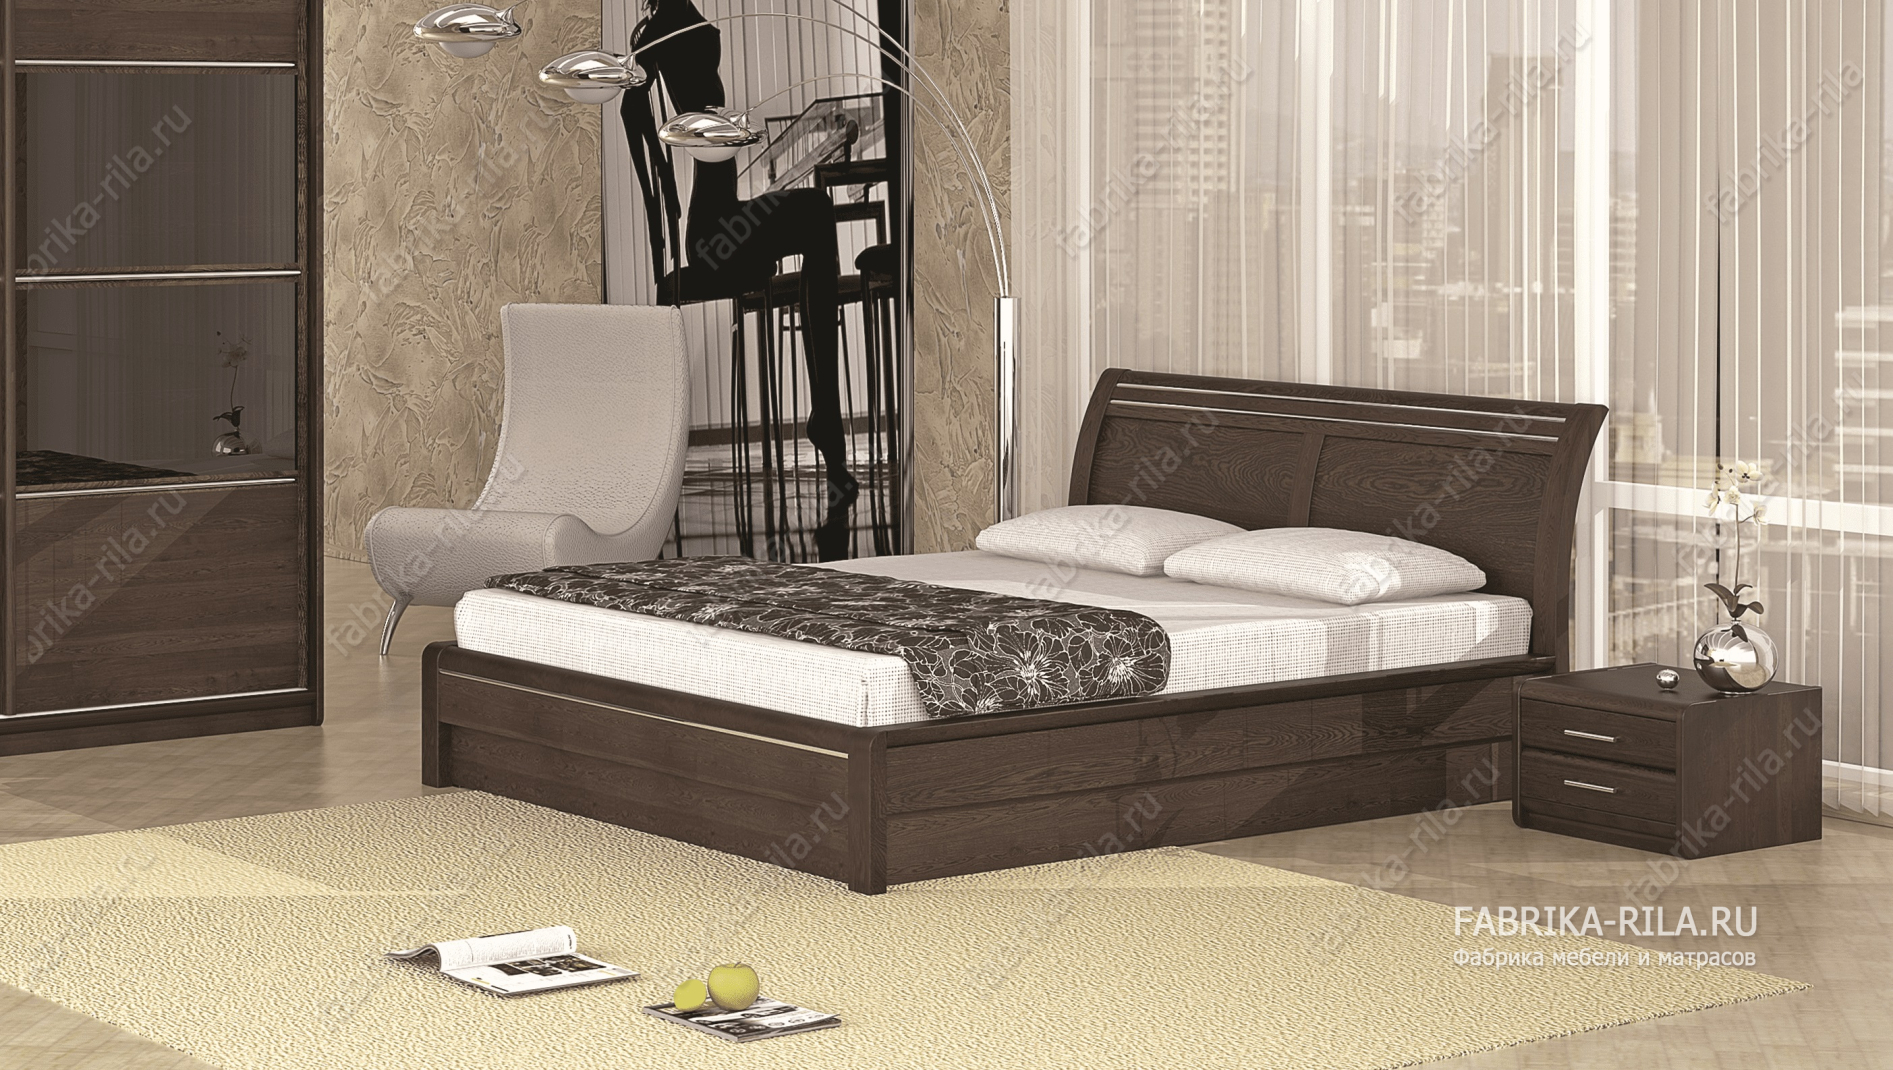 Кровать Okaeri 2 — 90x190 см. из дуба